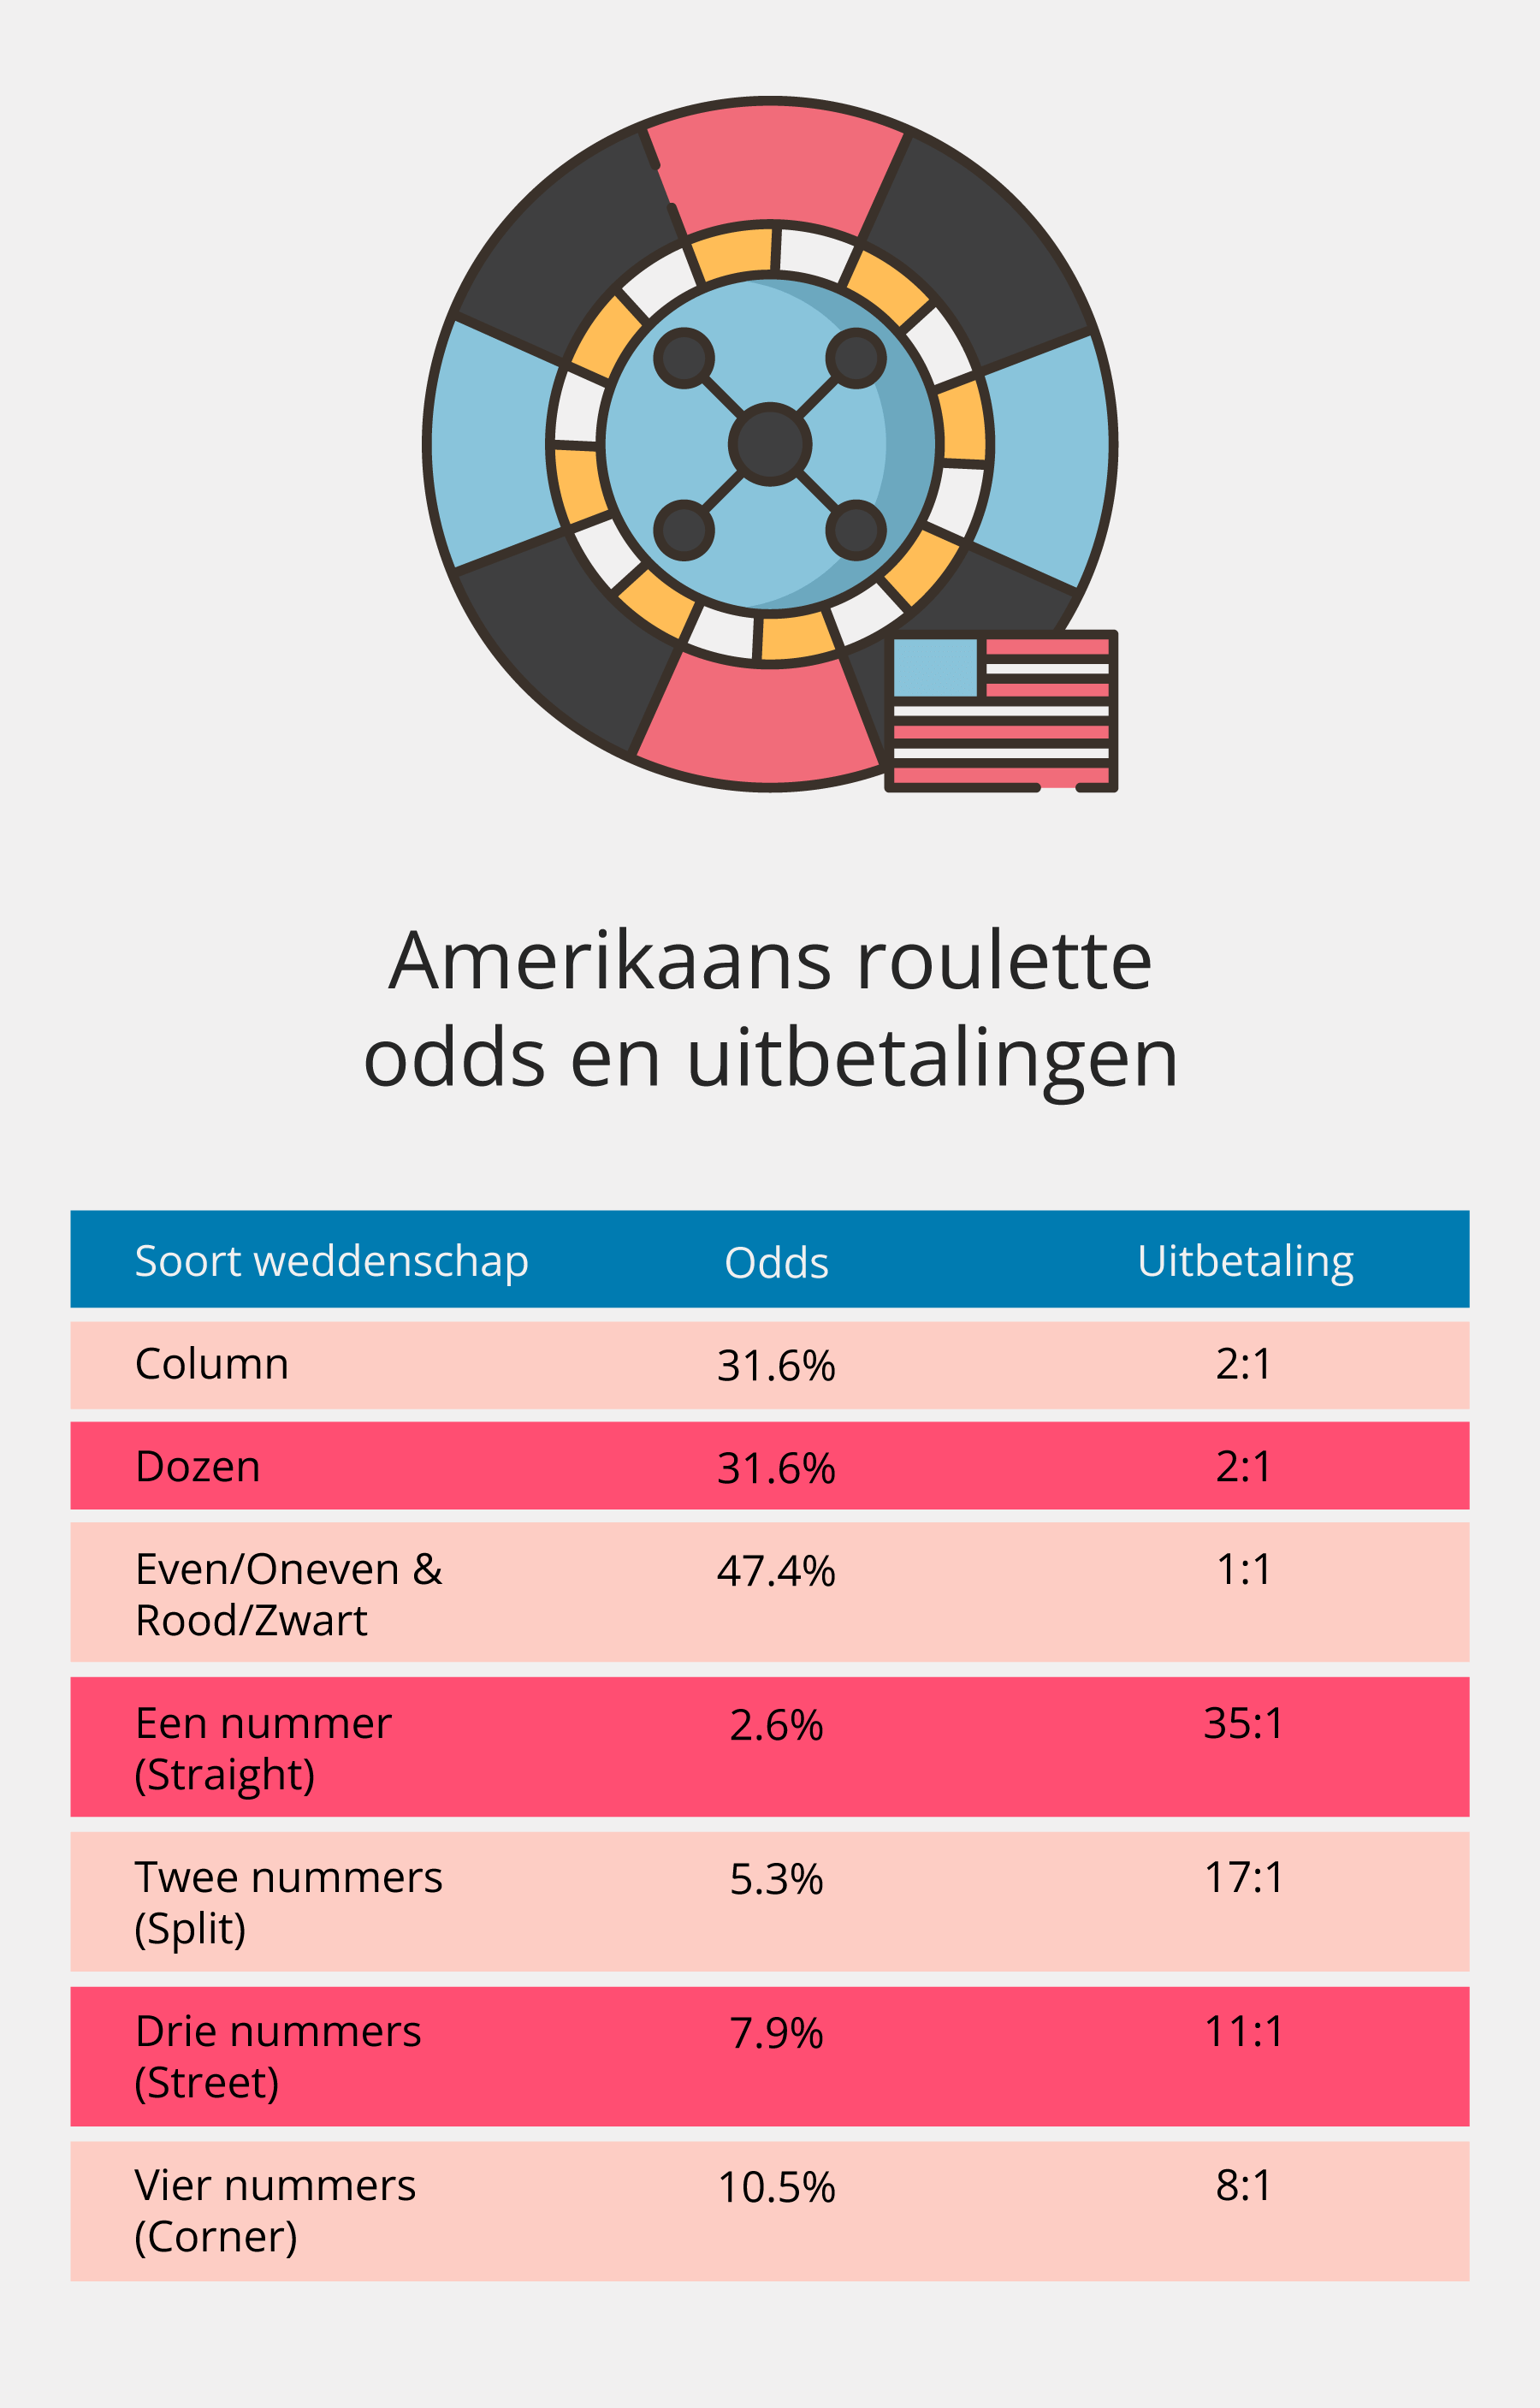 Odds en uitbetalingen van Amerikaans roulette